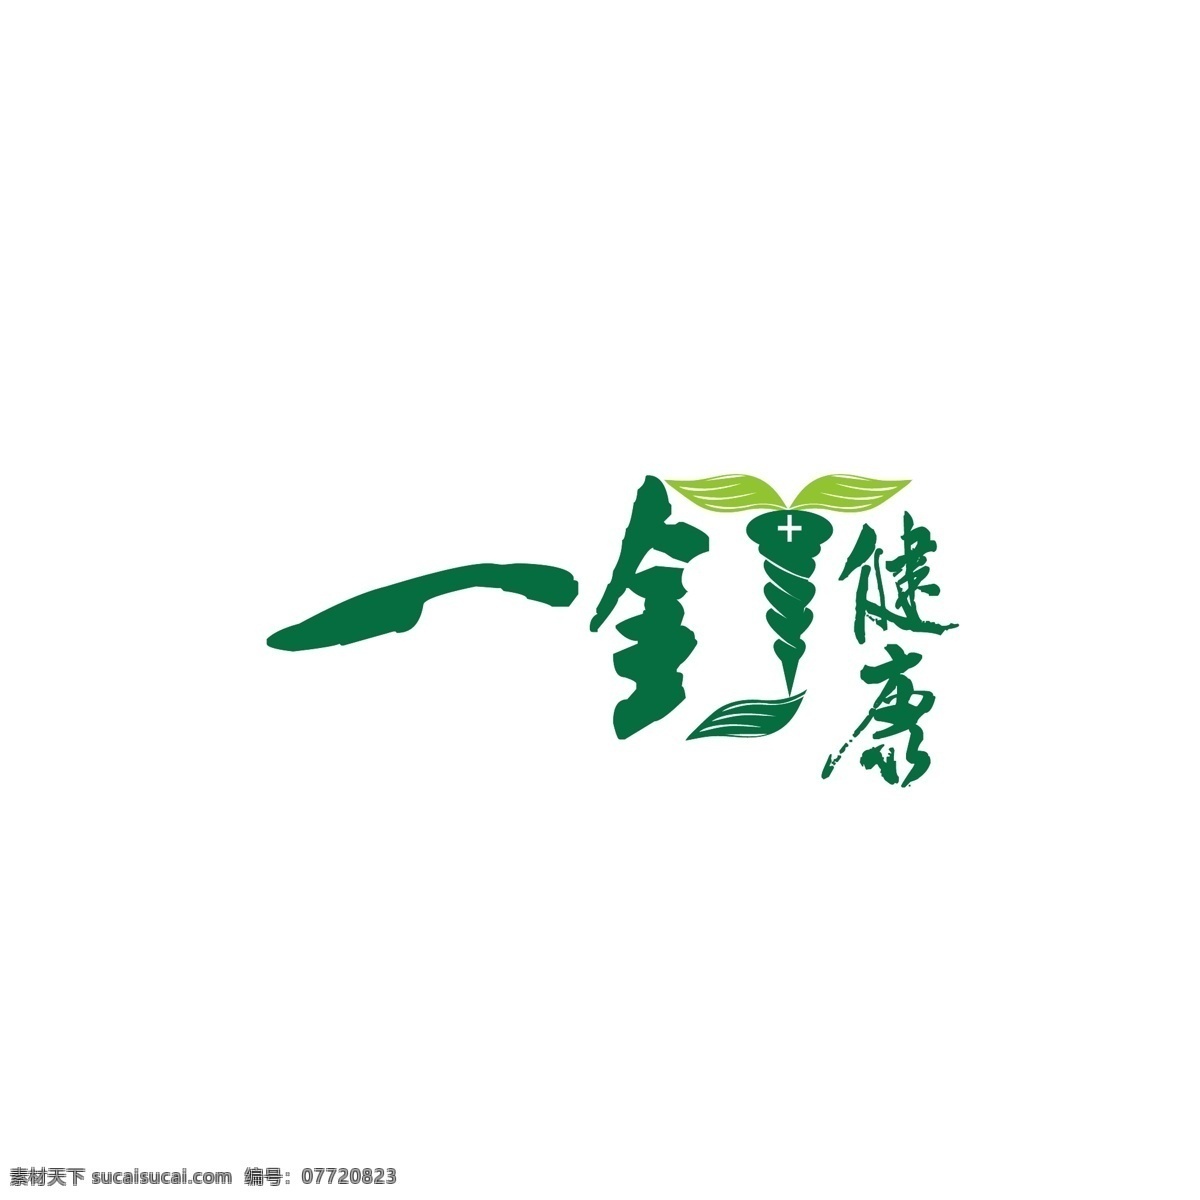 健康保健 logo 绿色 健康 翅膀 叶子 简约 钉子 法杖 保健